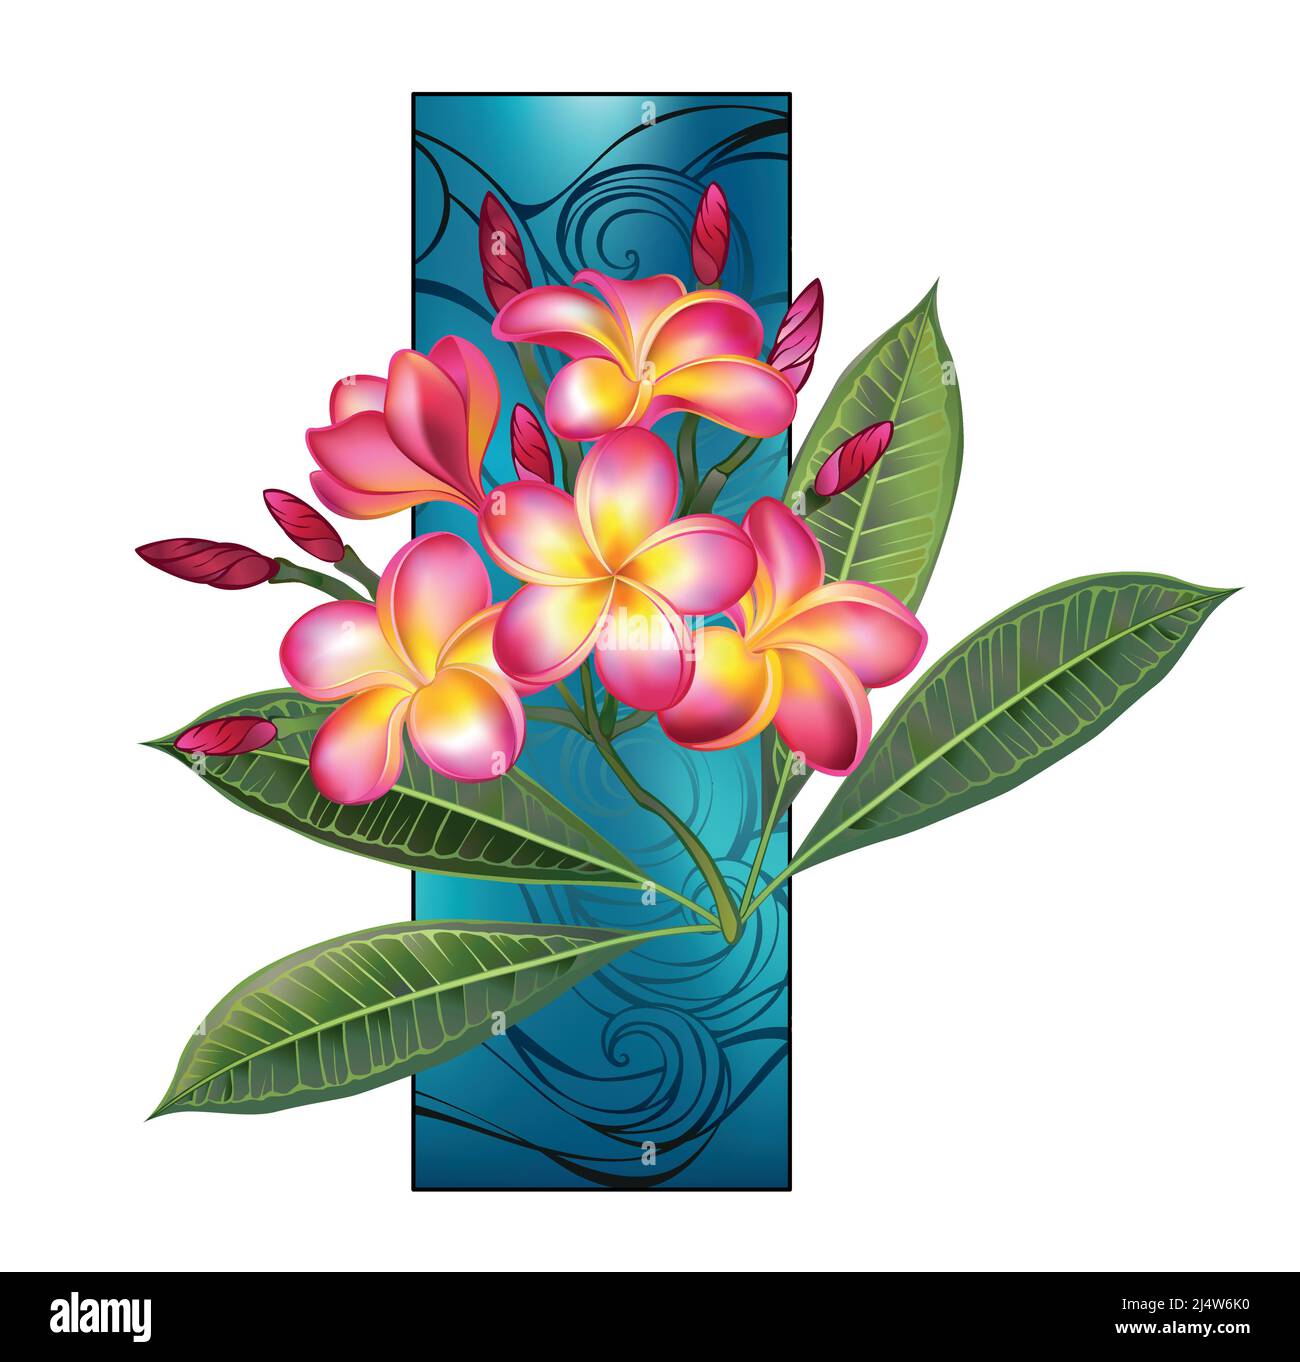 Rama de plumeria artísticamente dibujada con hojas verdes y flores rosadas en flor contra rectángulo azul marino. Ilustración del Vector